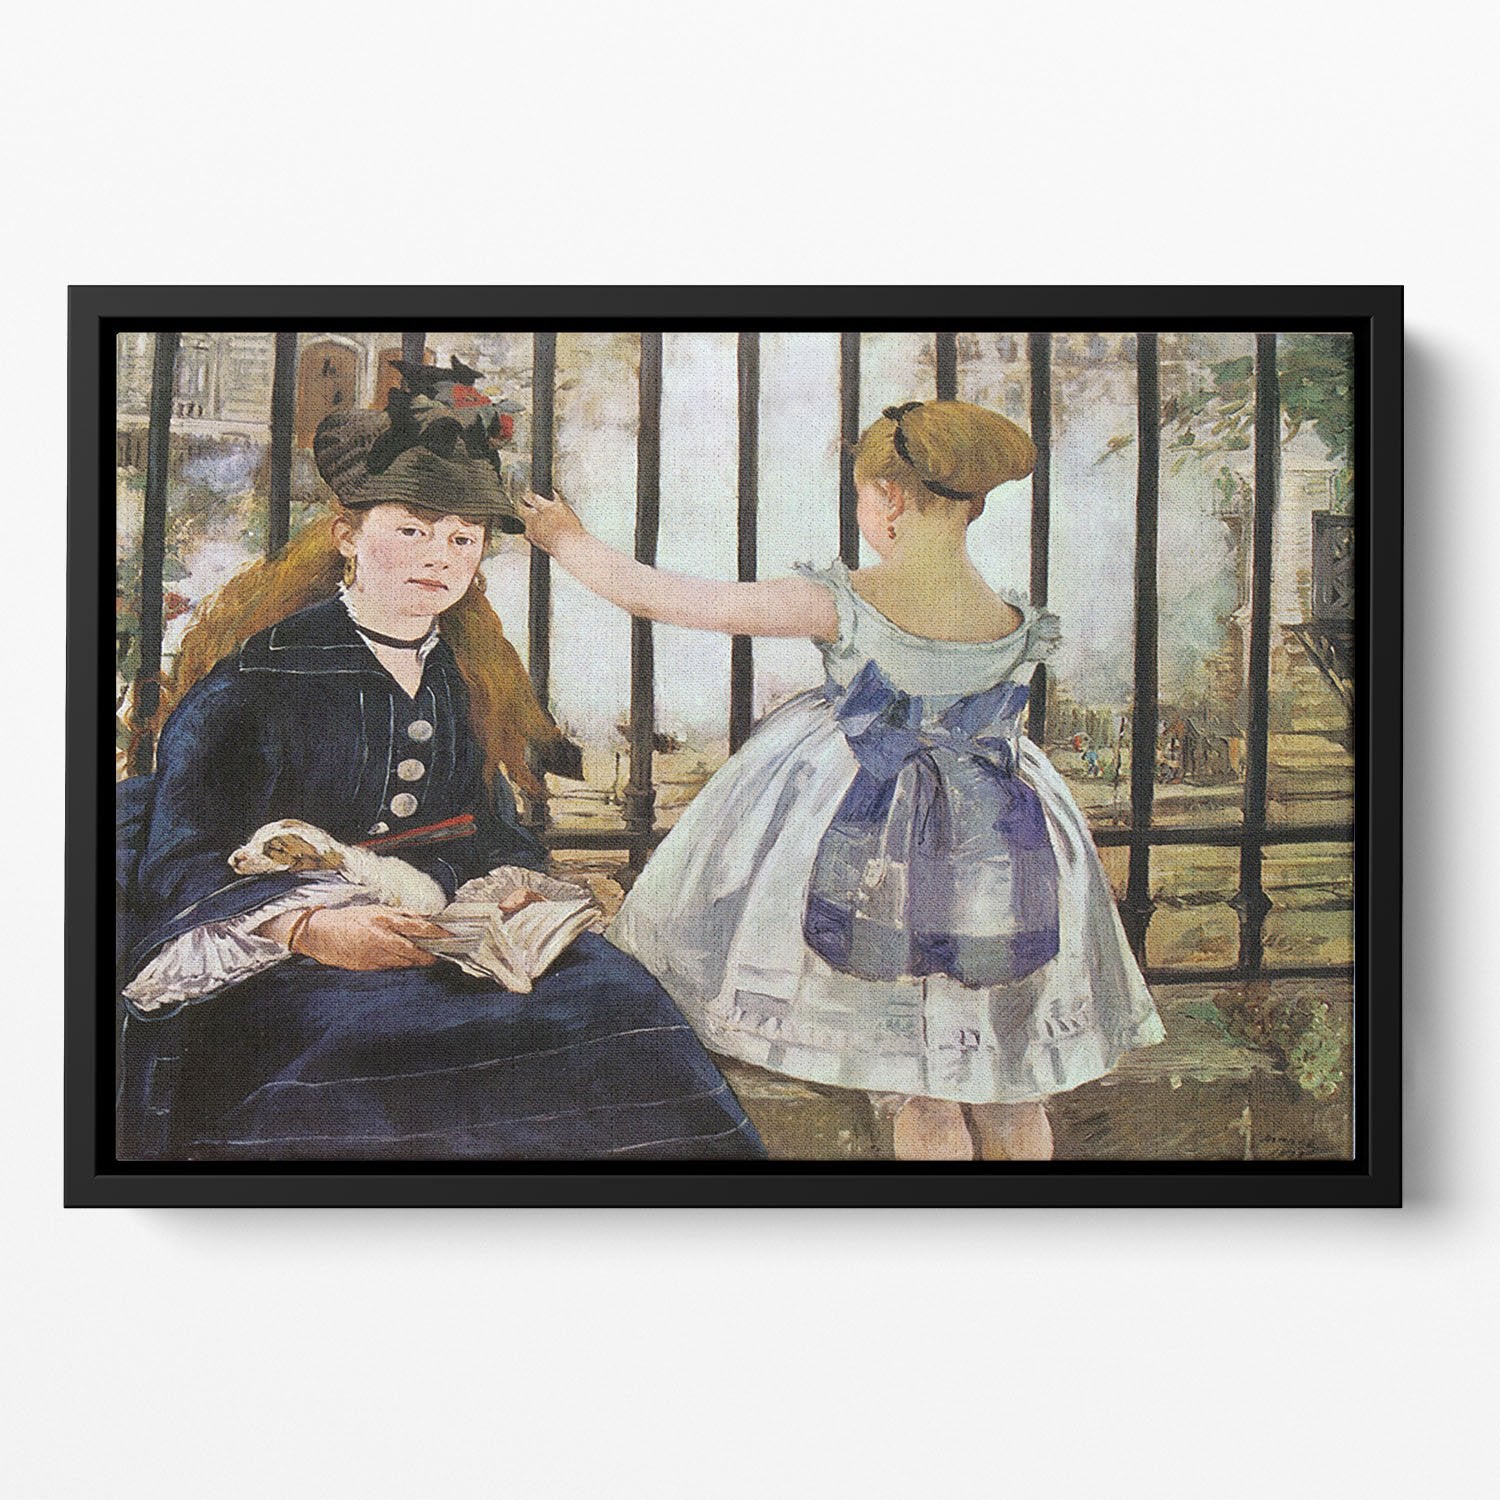 Le Chemin de fer 1873 by Manet Floating Framed Canvas